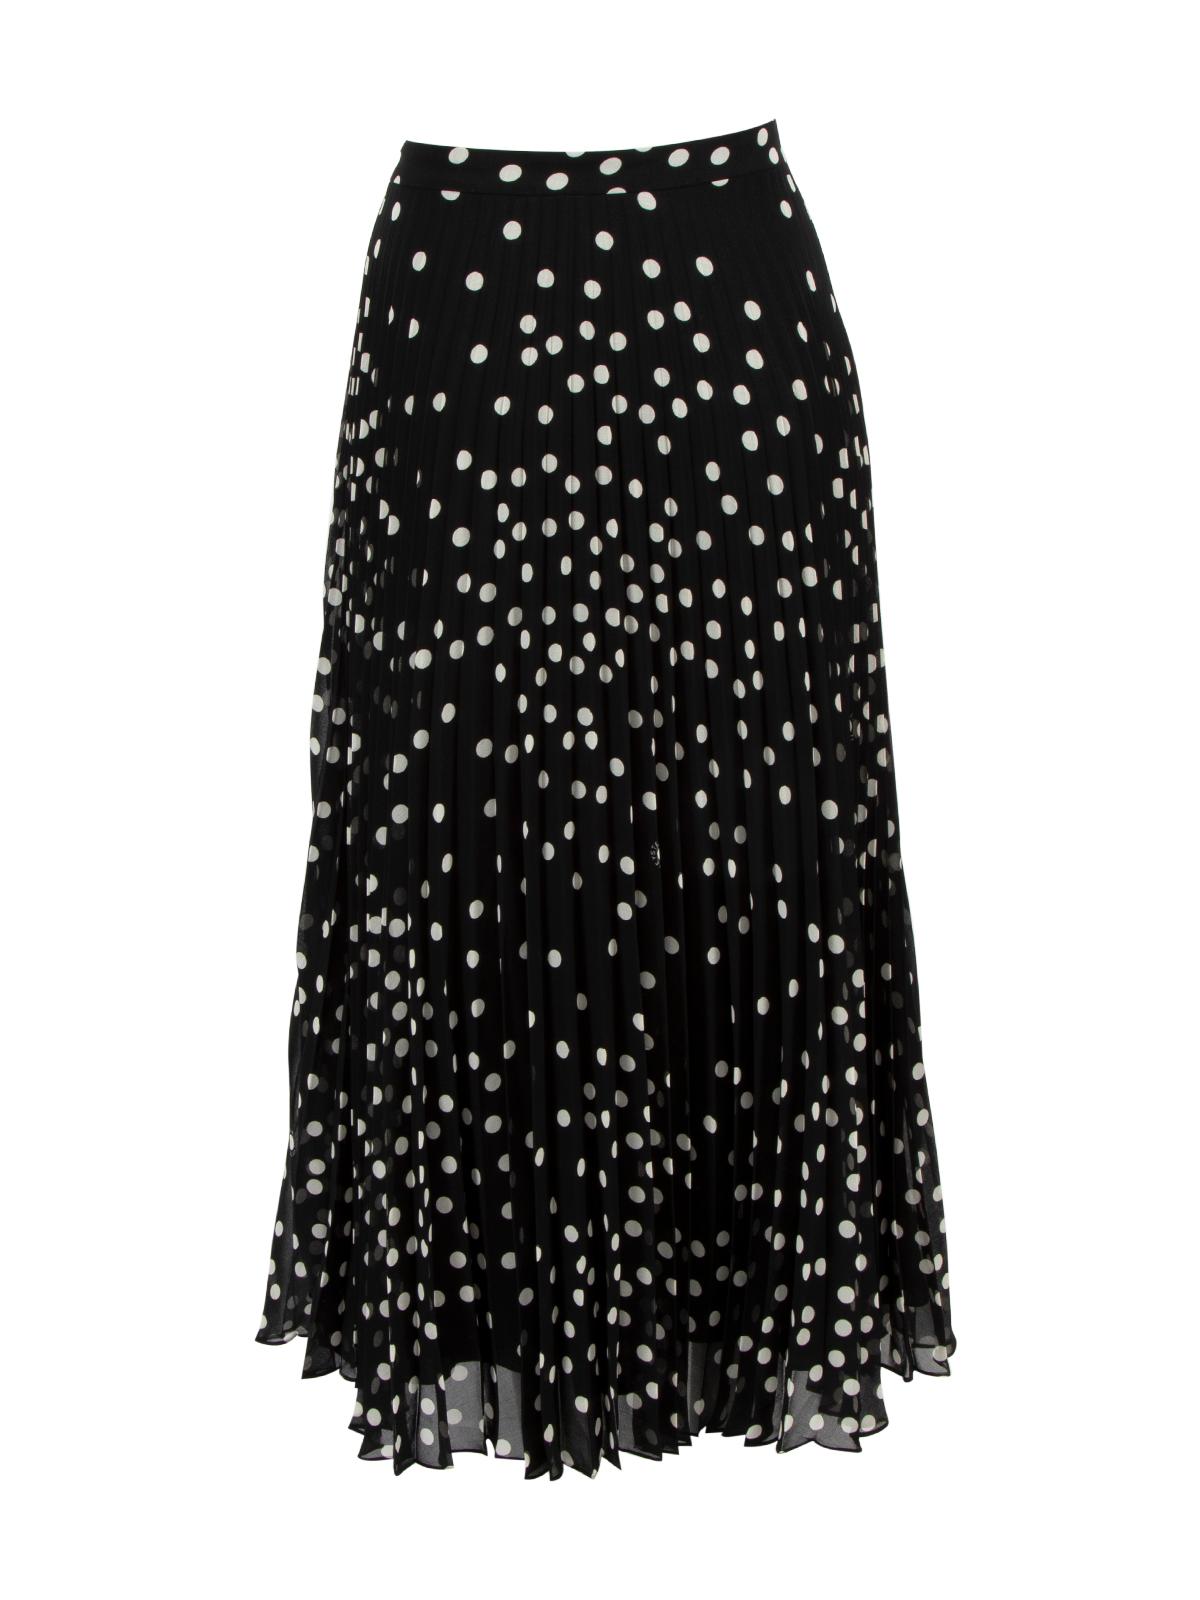 Pre-Loved Stella McCartney Women's Polka Dot Maxi Pleated Skirt 1